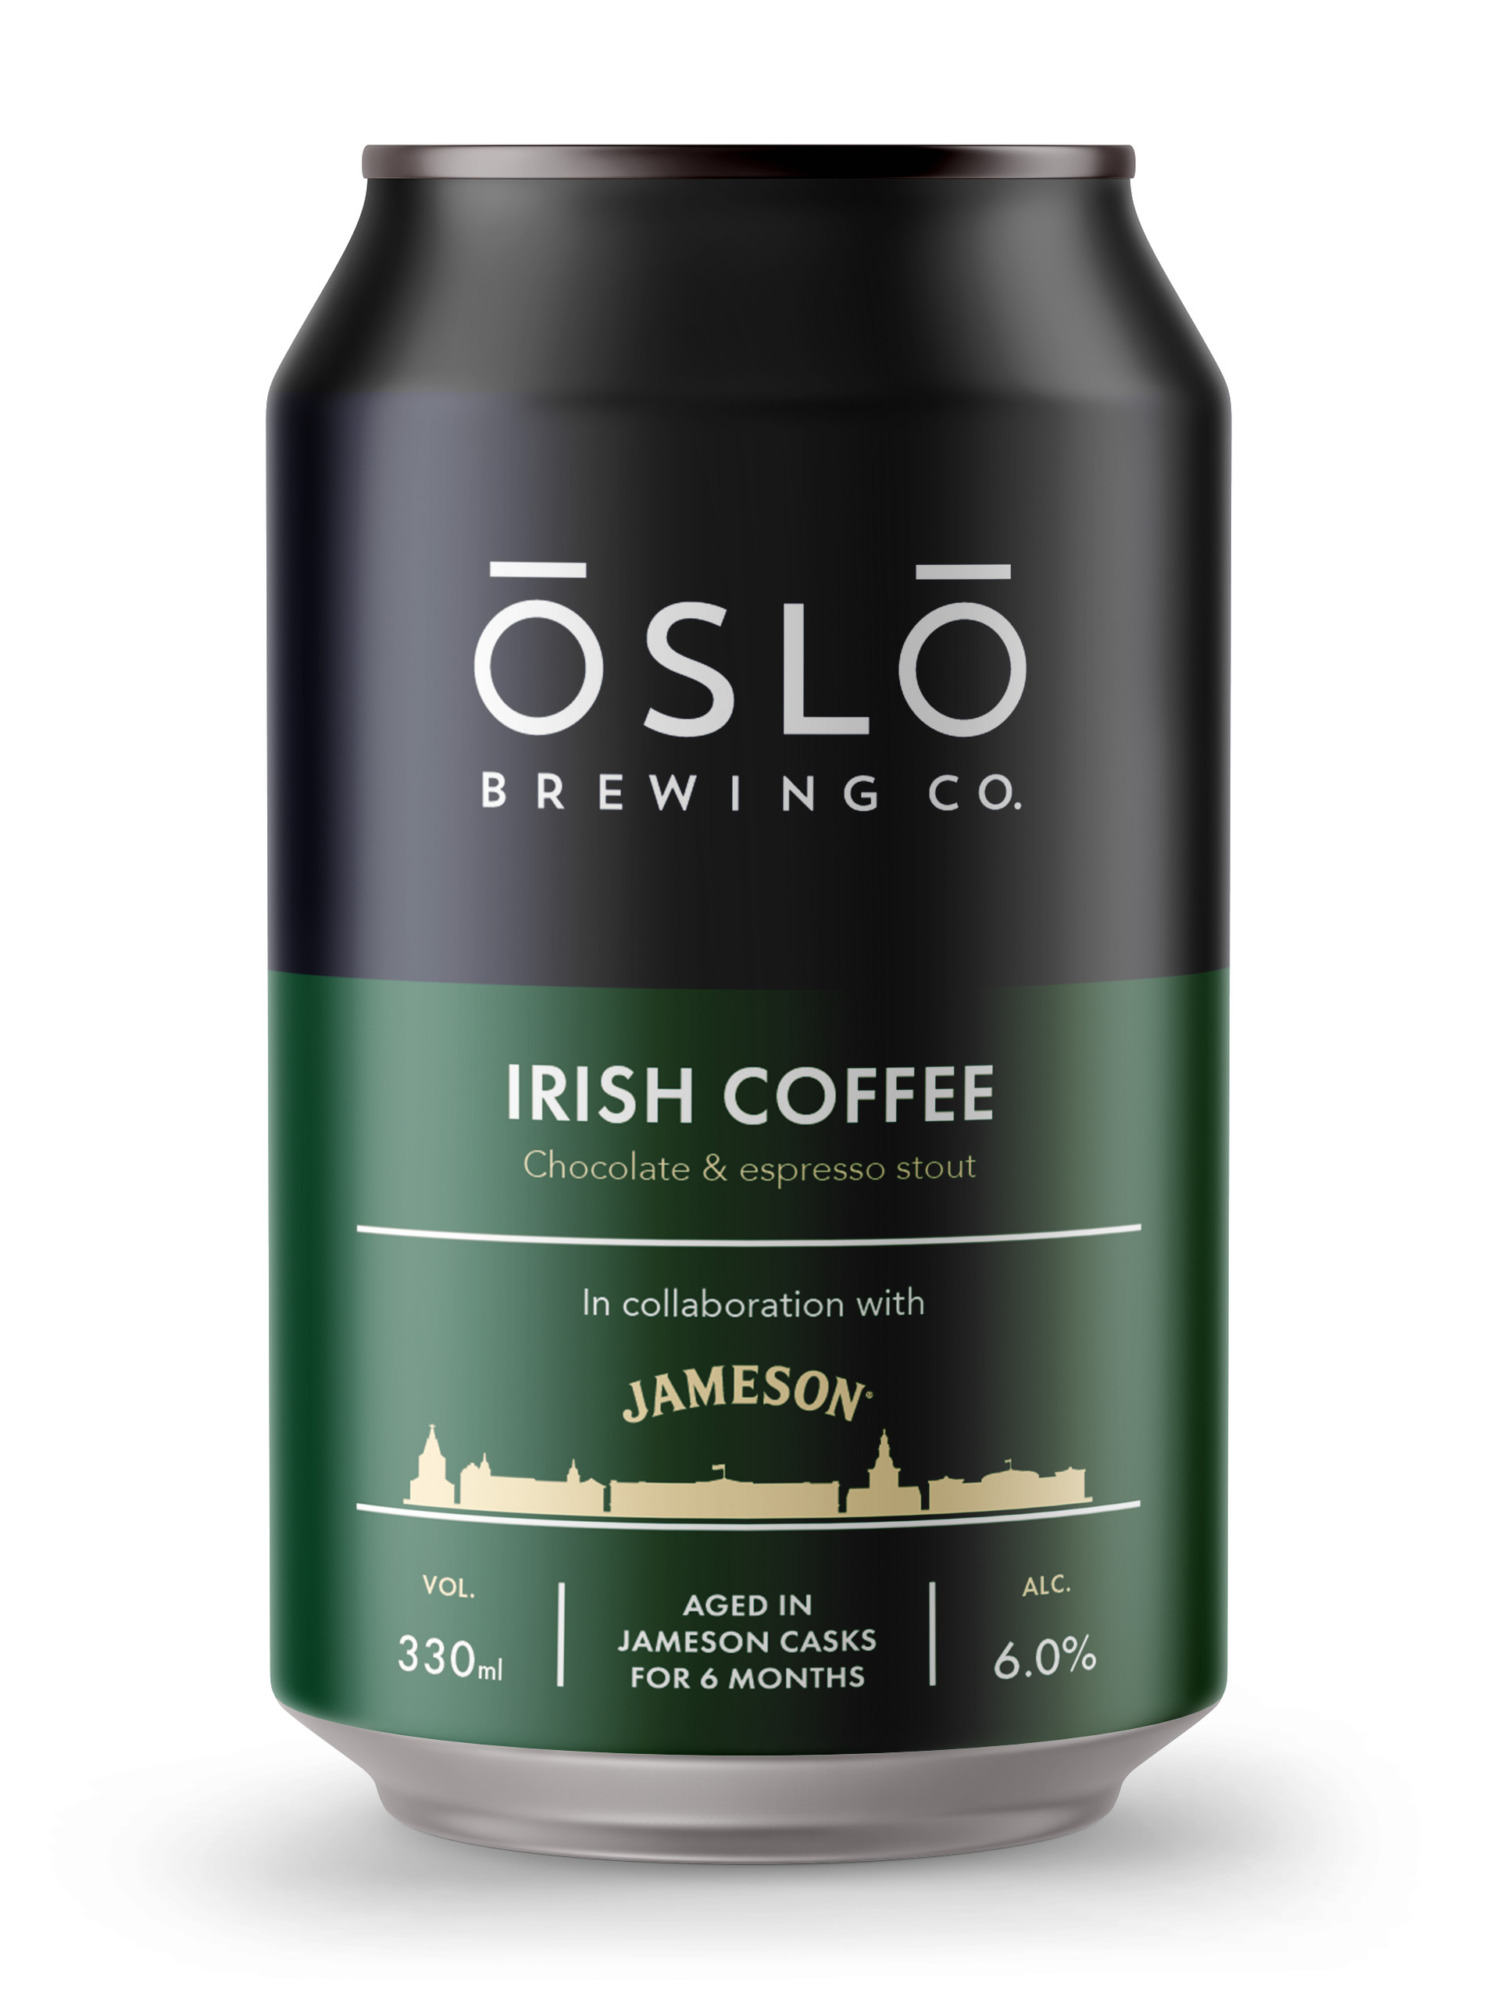 Oslo_Brewing_Company_Jameson_Irish_Coffee_Beer_Can